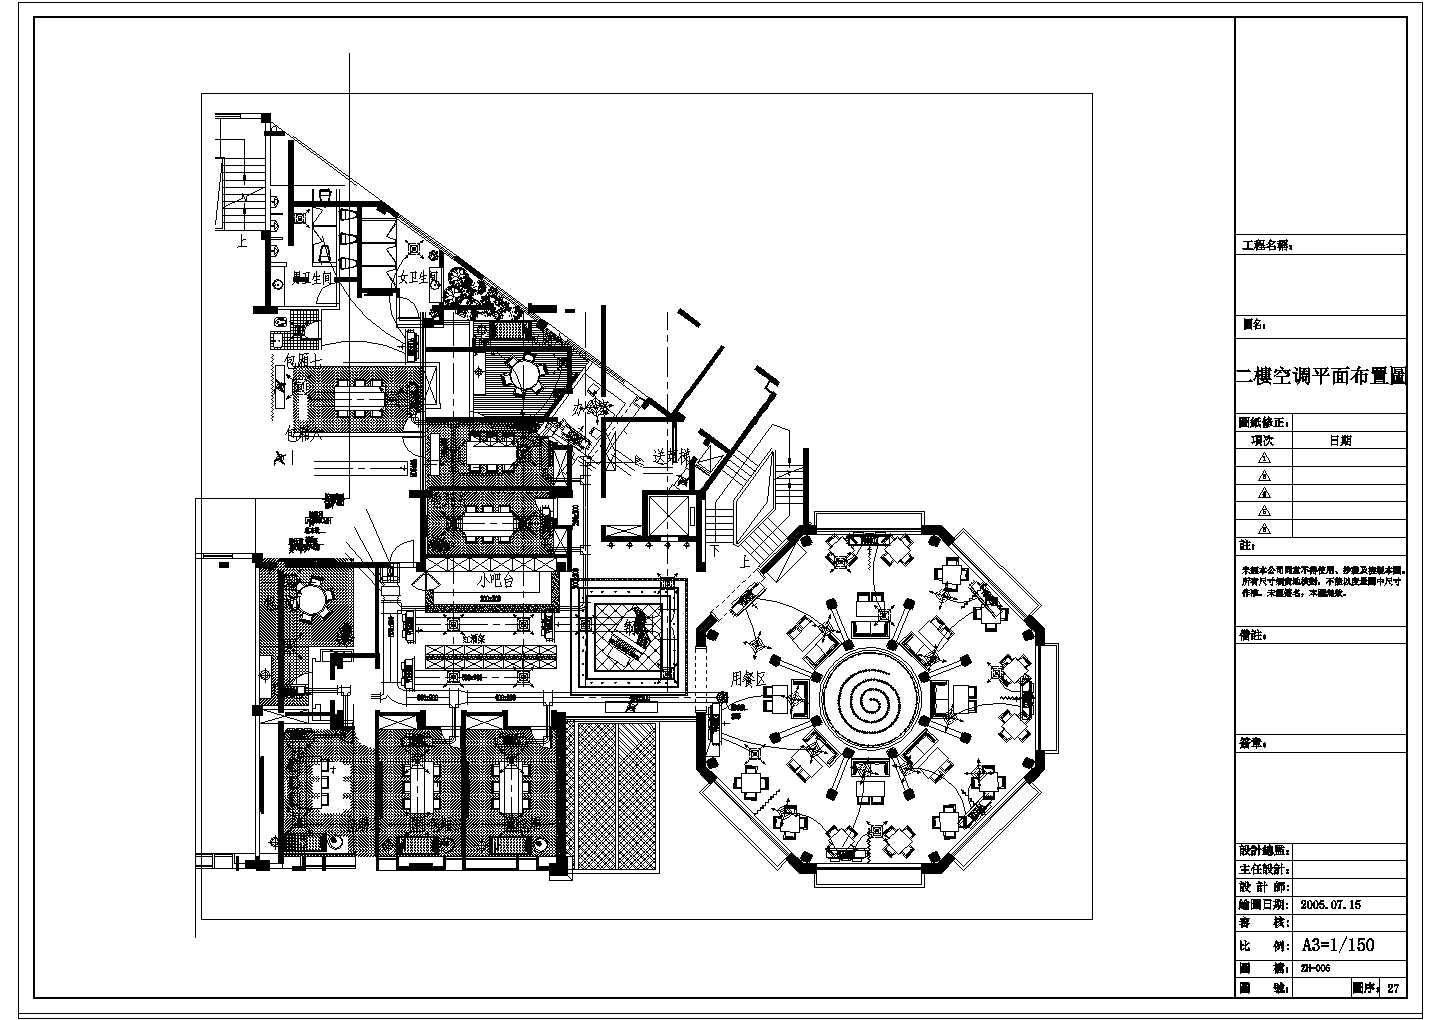 【珠海】中央空调工程专业设计方案图